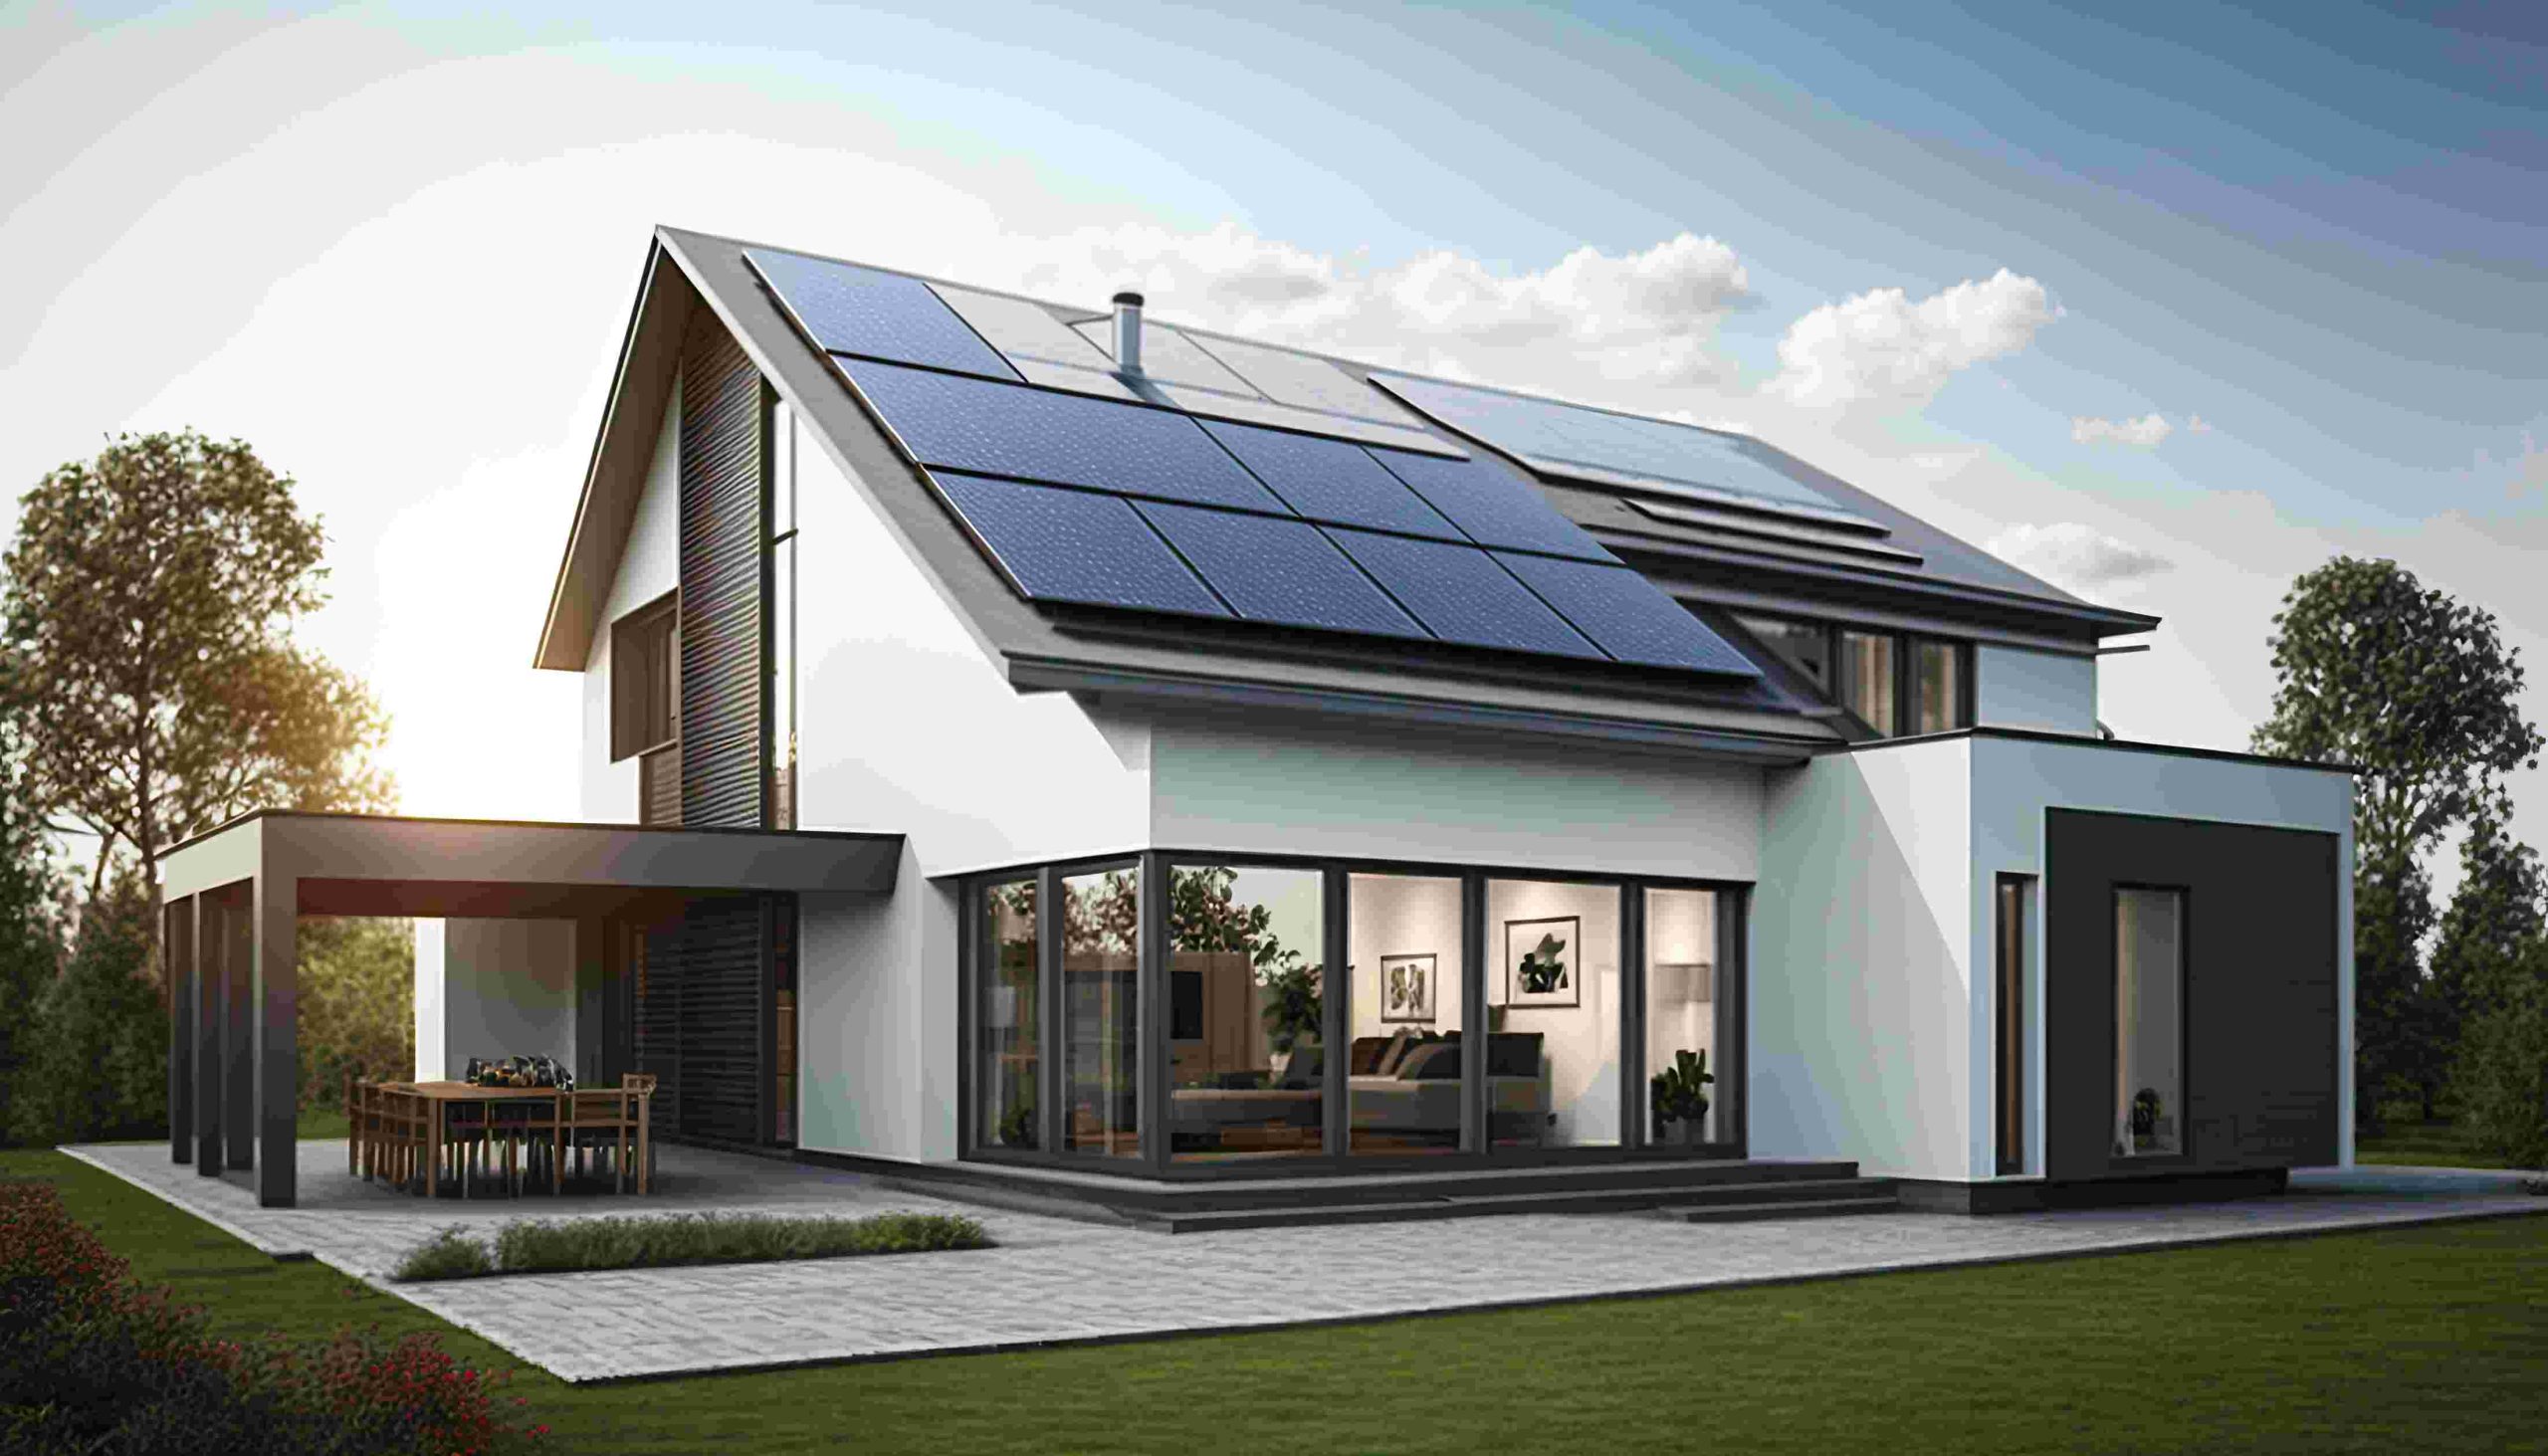 La revolución de las casas modulares: innovación, eficiencia y sostenibilidad